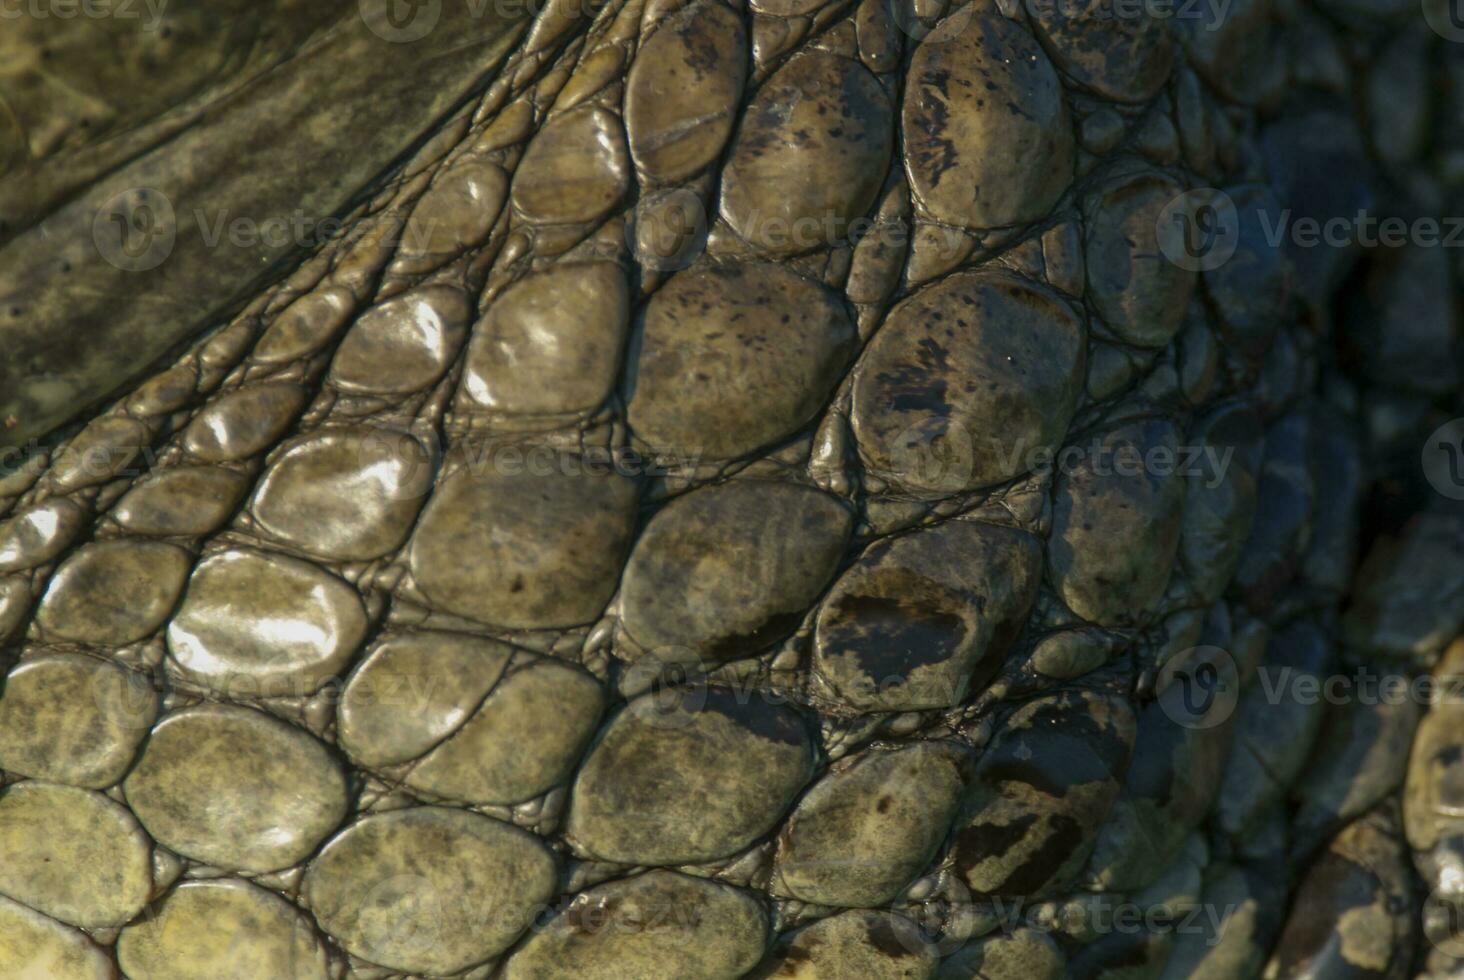 en stänga upp hud av ett alligator foto